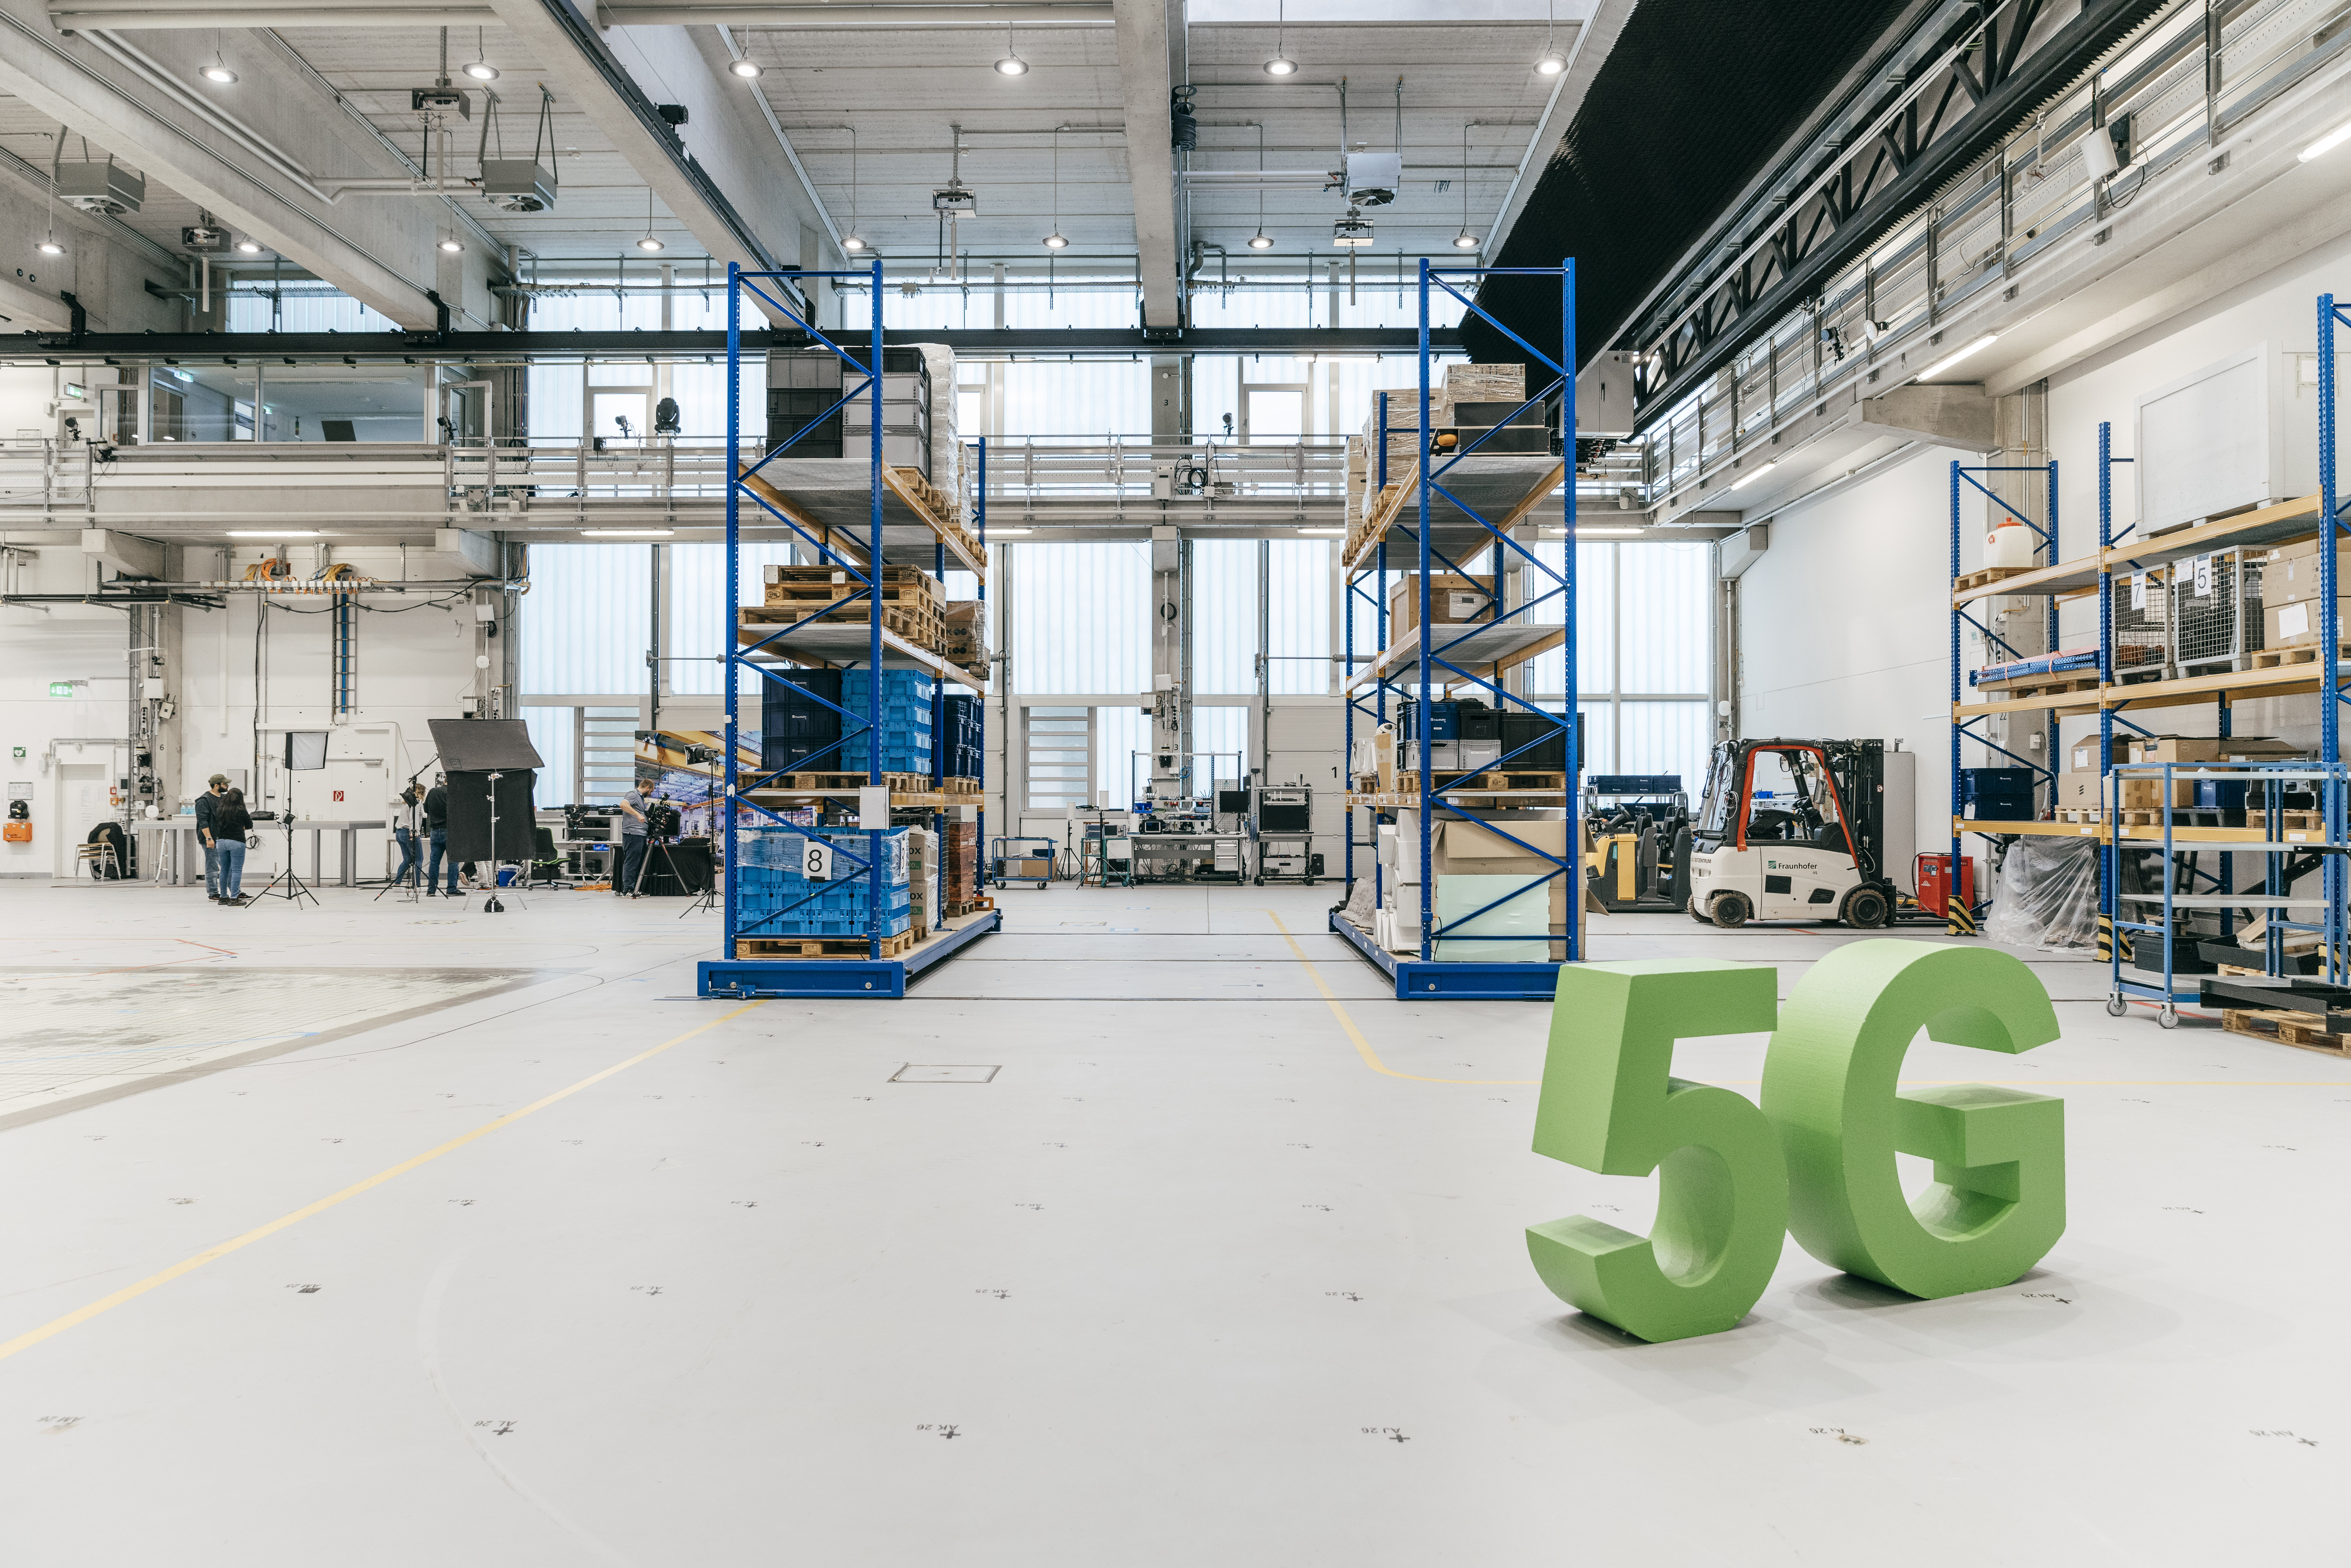 Regale, Paletten, Gabelstapler: Das Testbed von 5G-Bavaria ist eine echte Industriehalle.